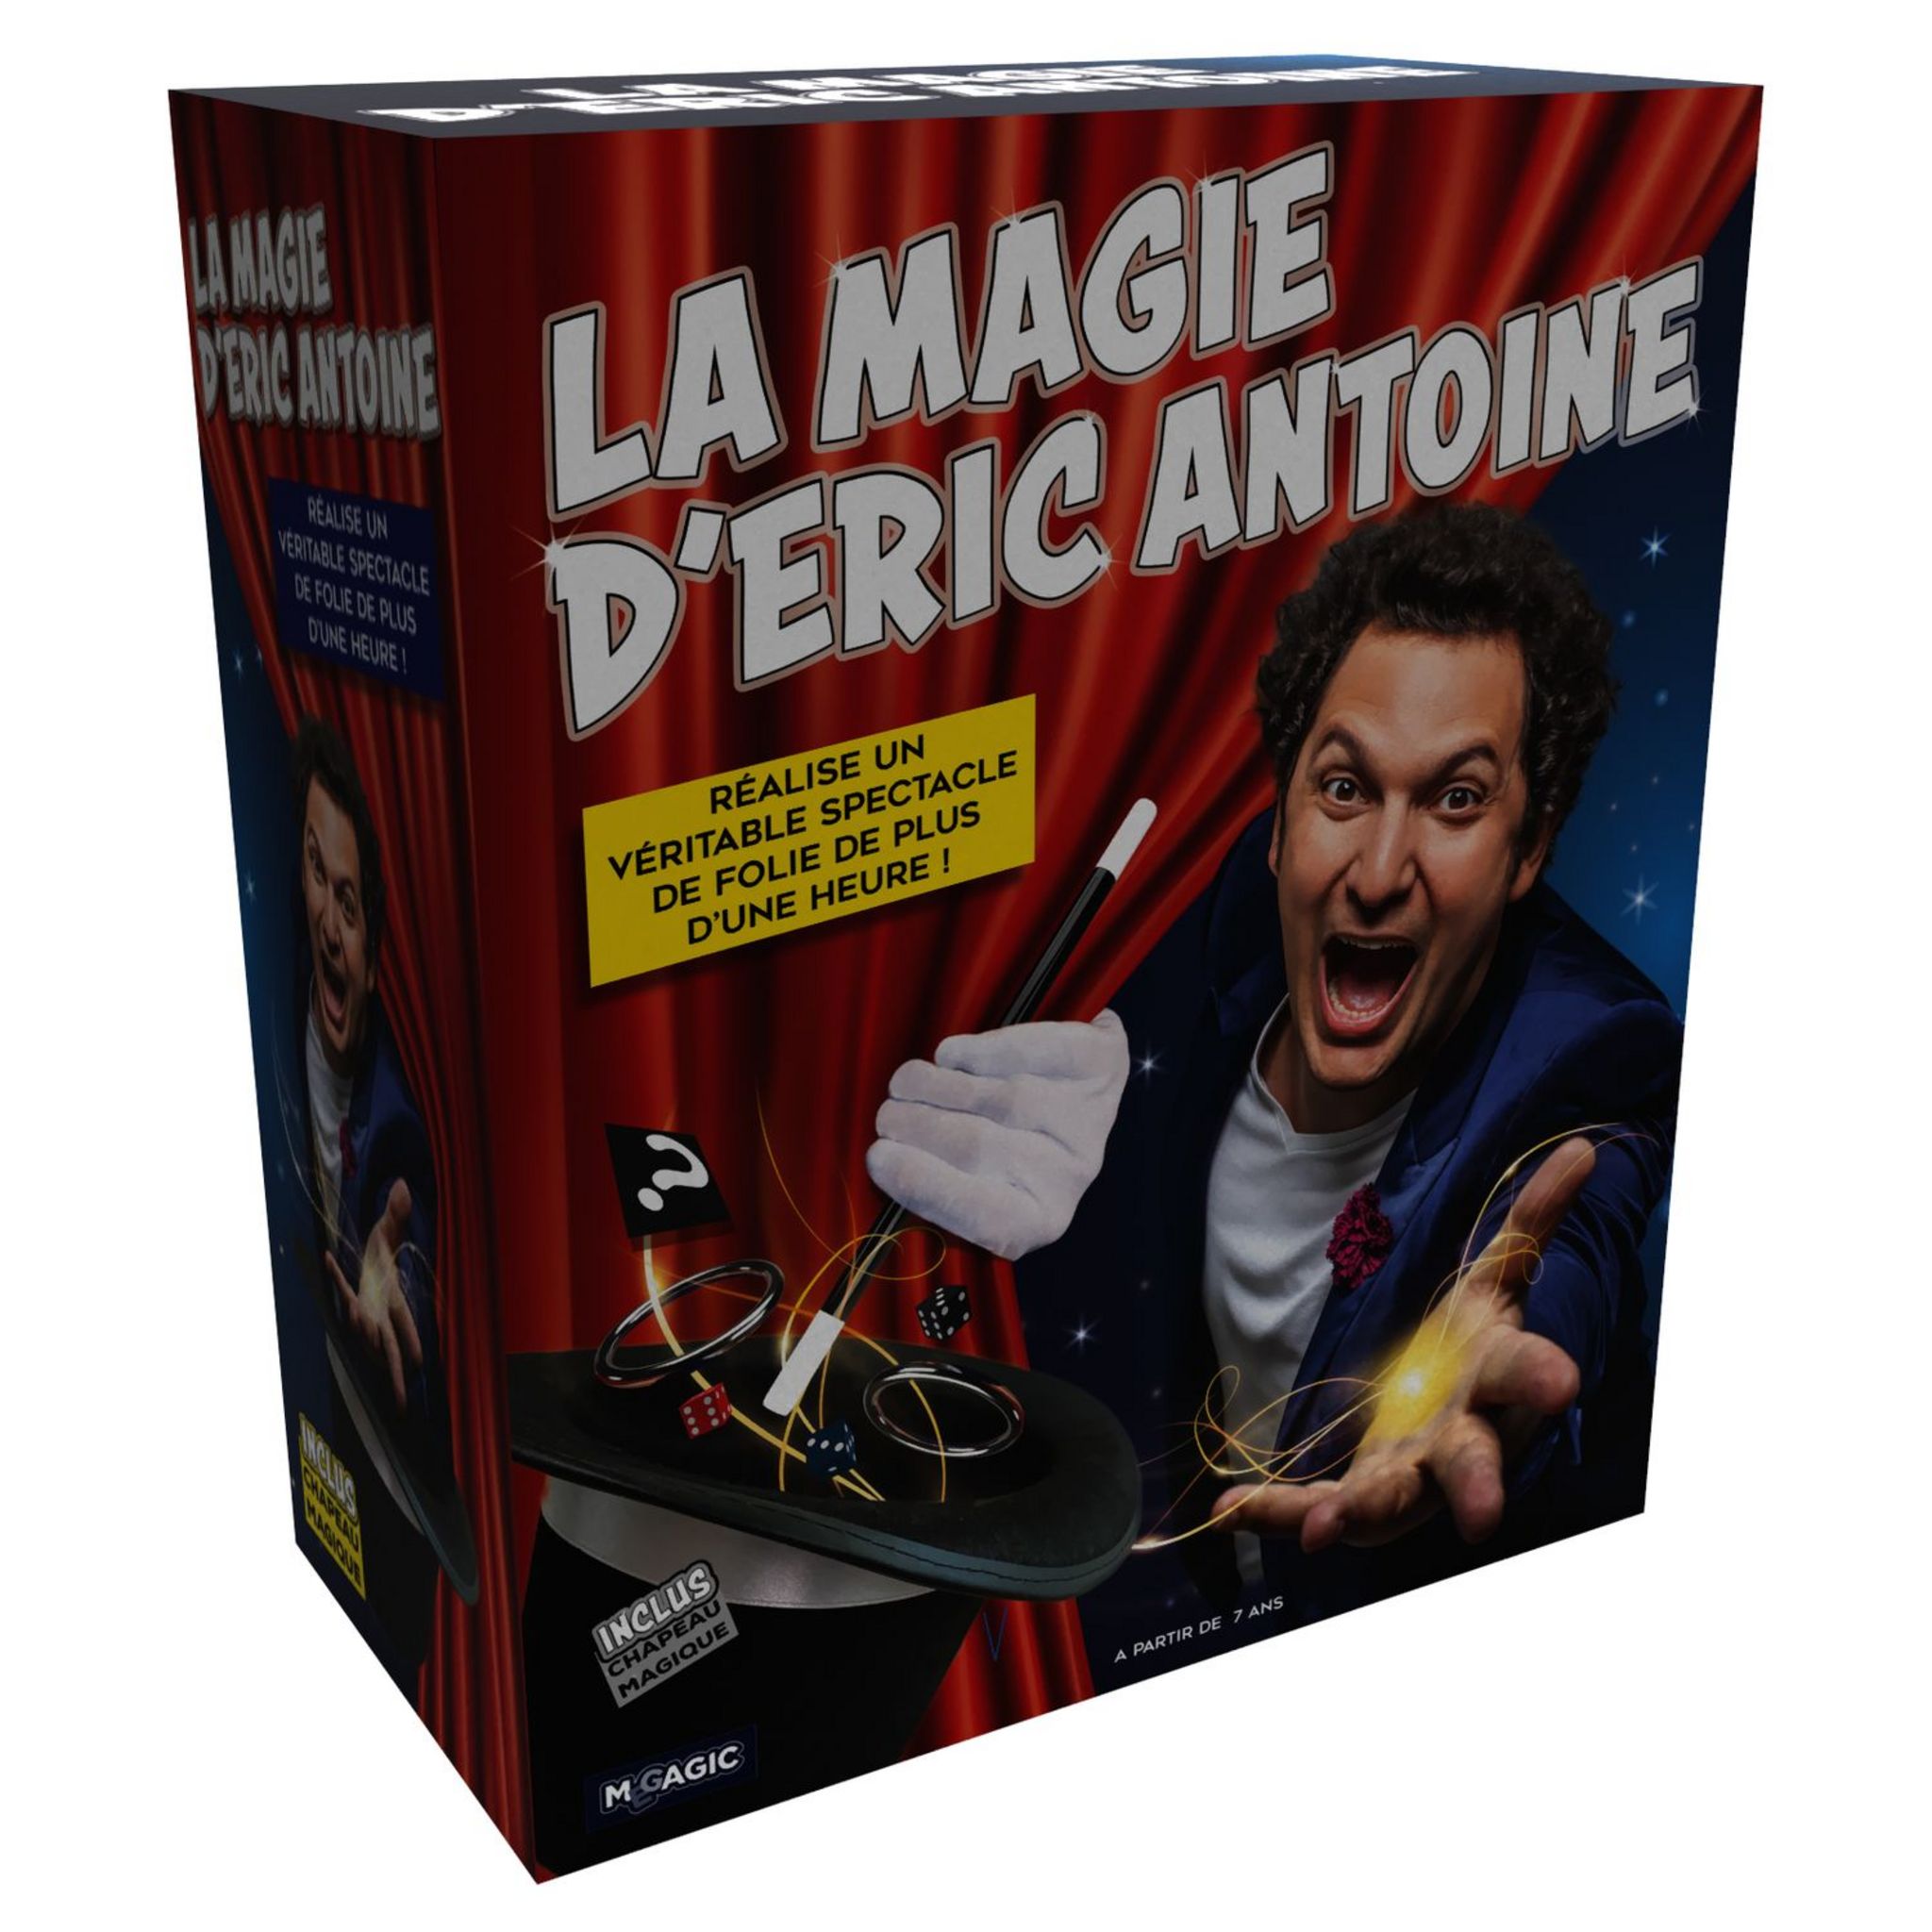 Megagic - Coffret de Magie pour Enfant - Eric Antoine - La Magie des Cartes